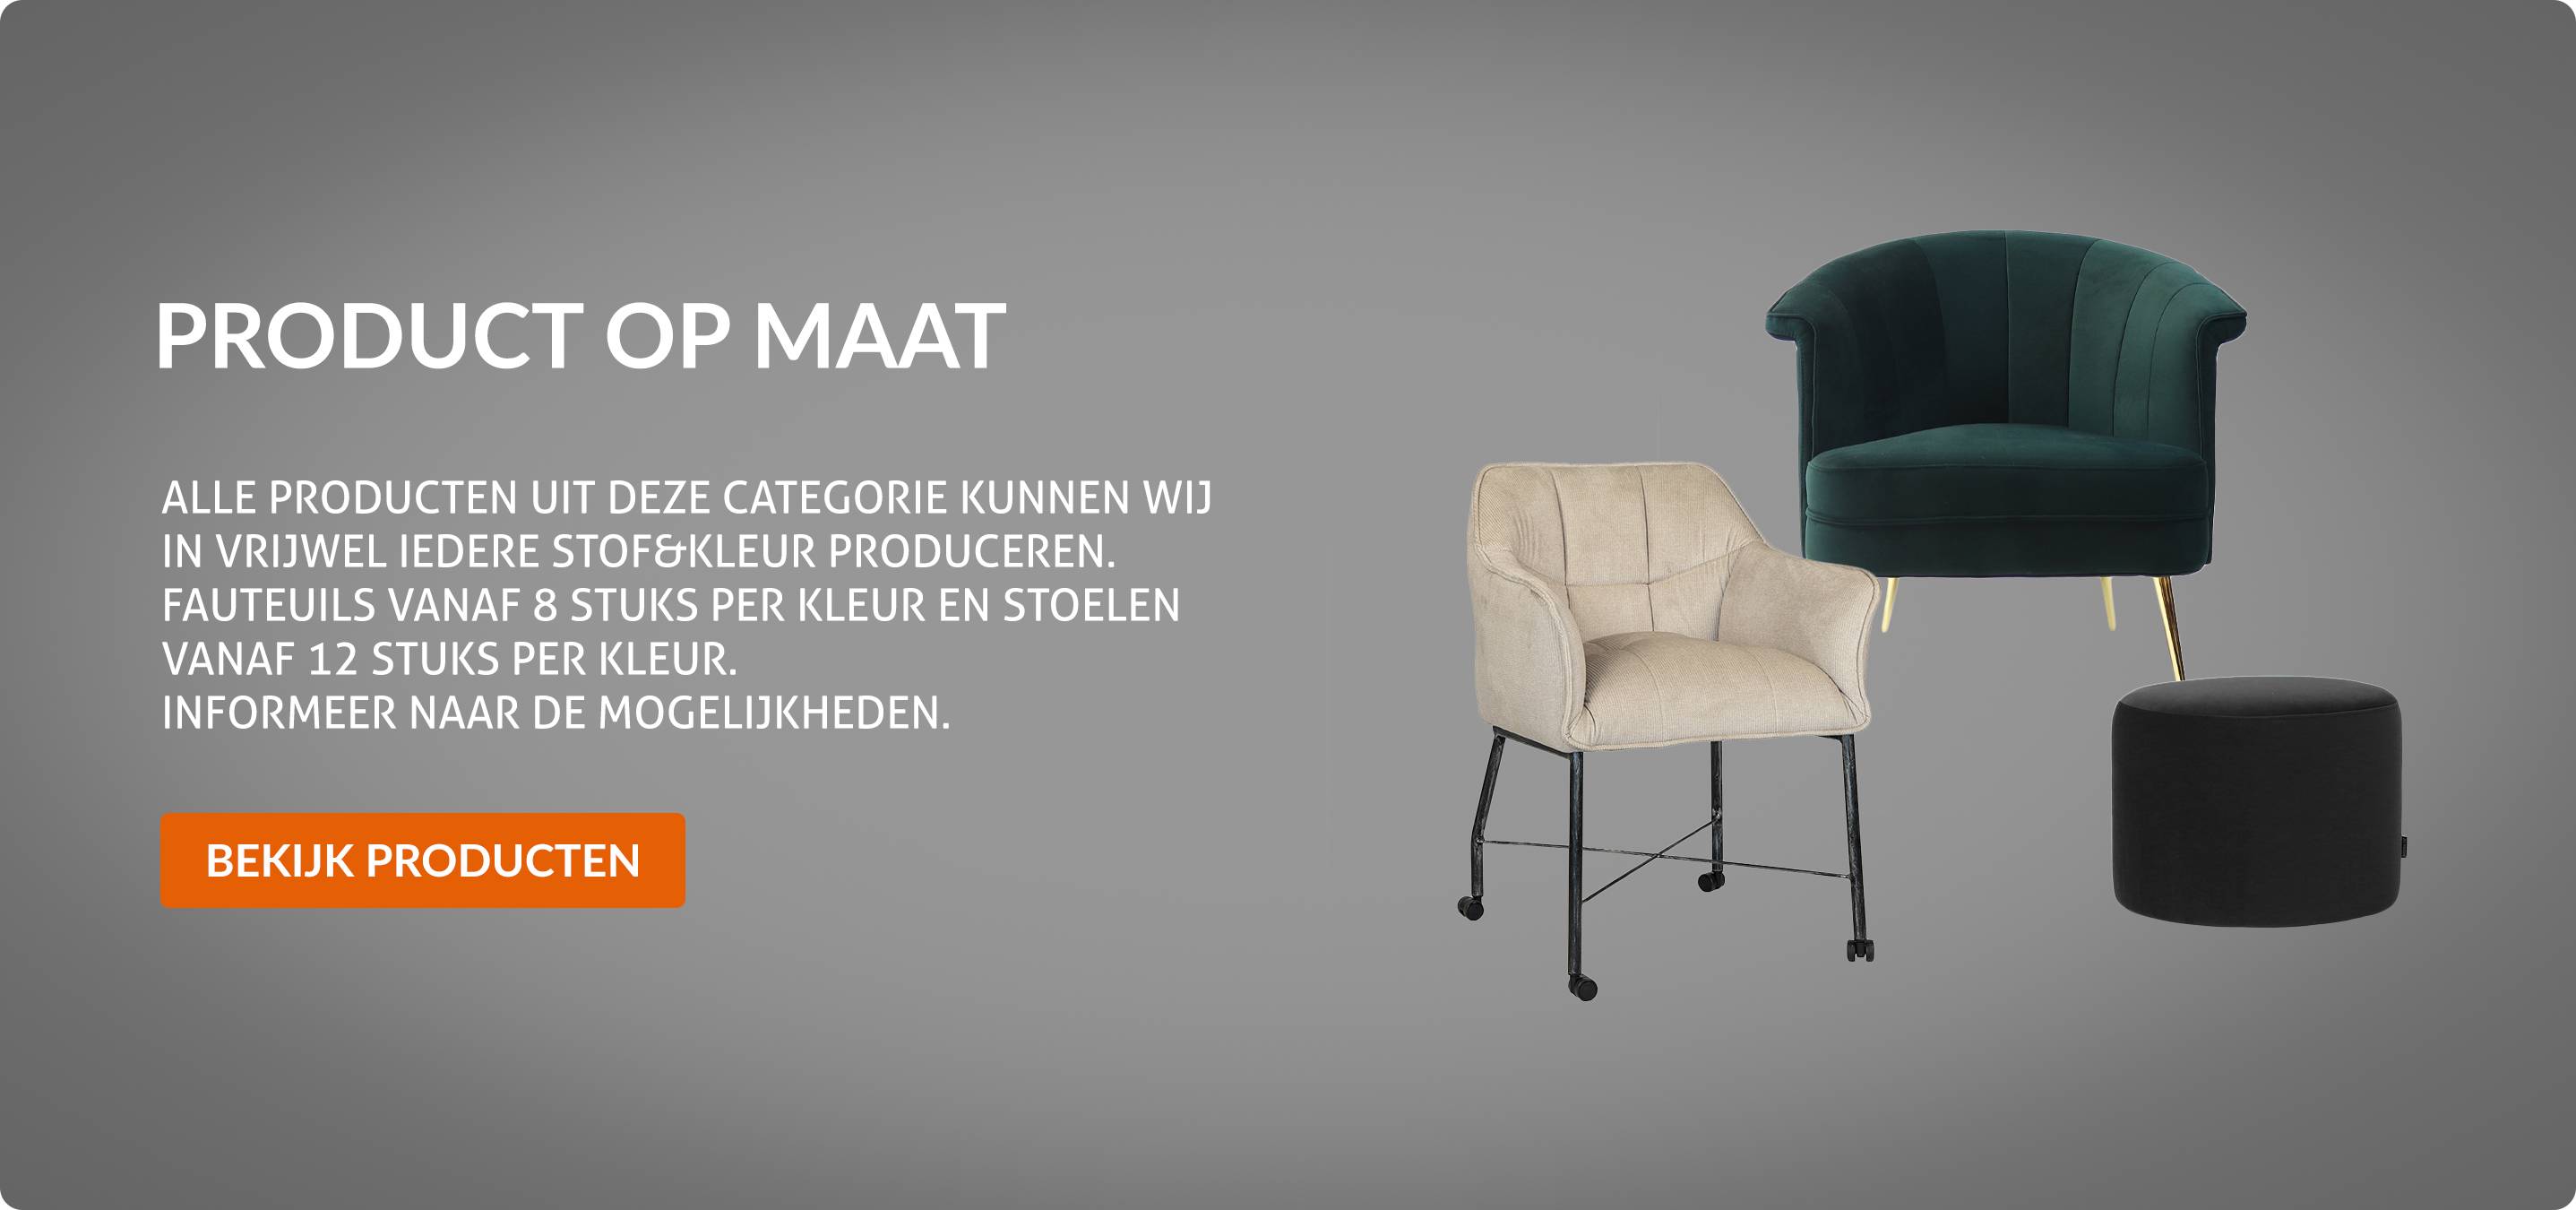 spek Dij Oprecht Labelwise - Leverancier van meubilair voor horeca & projectinrichting -  20.000 producten op voorraad! - Labelwise